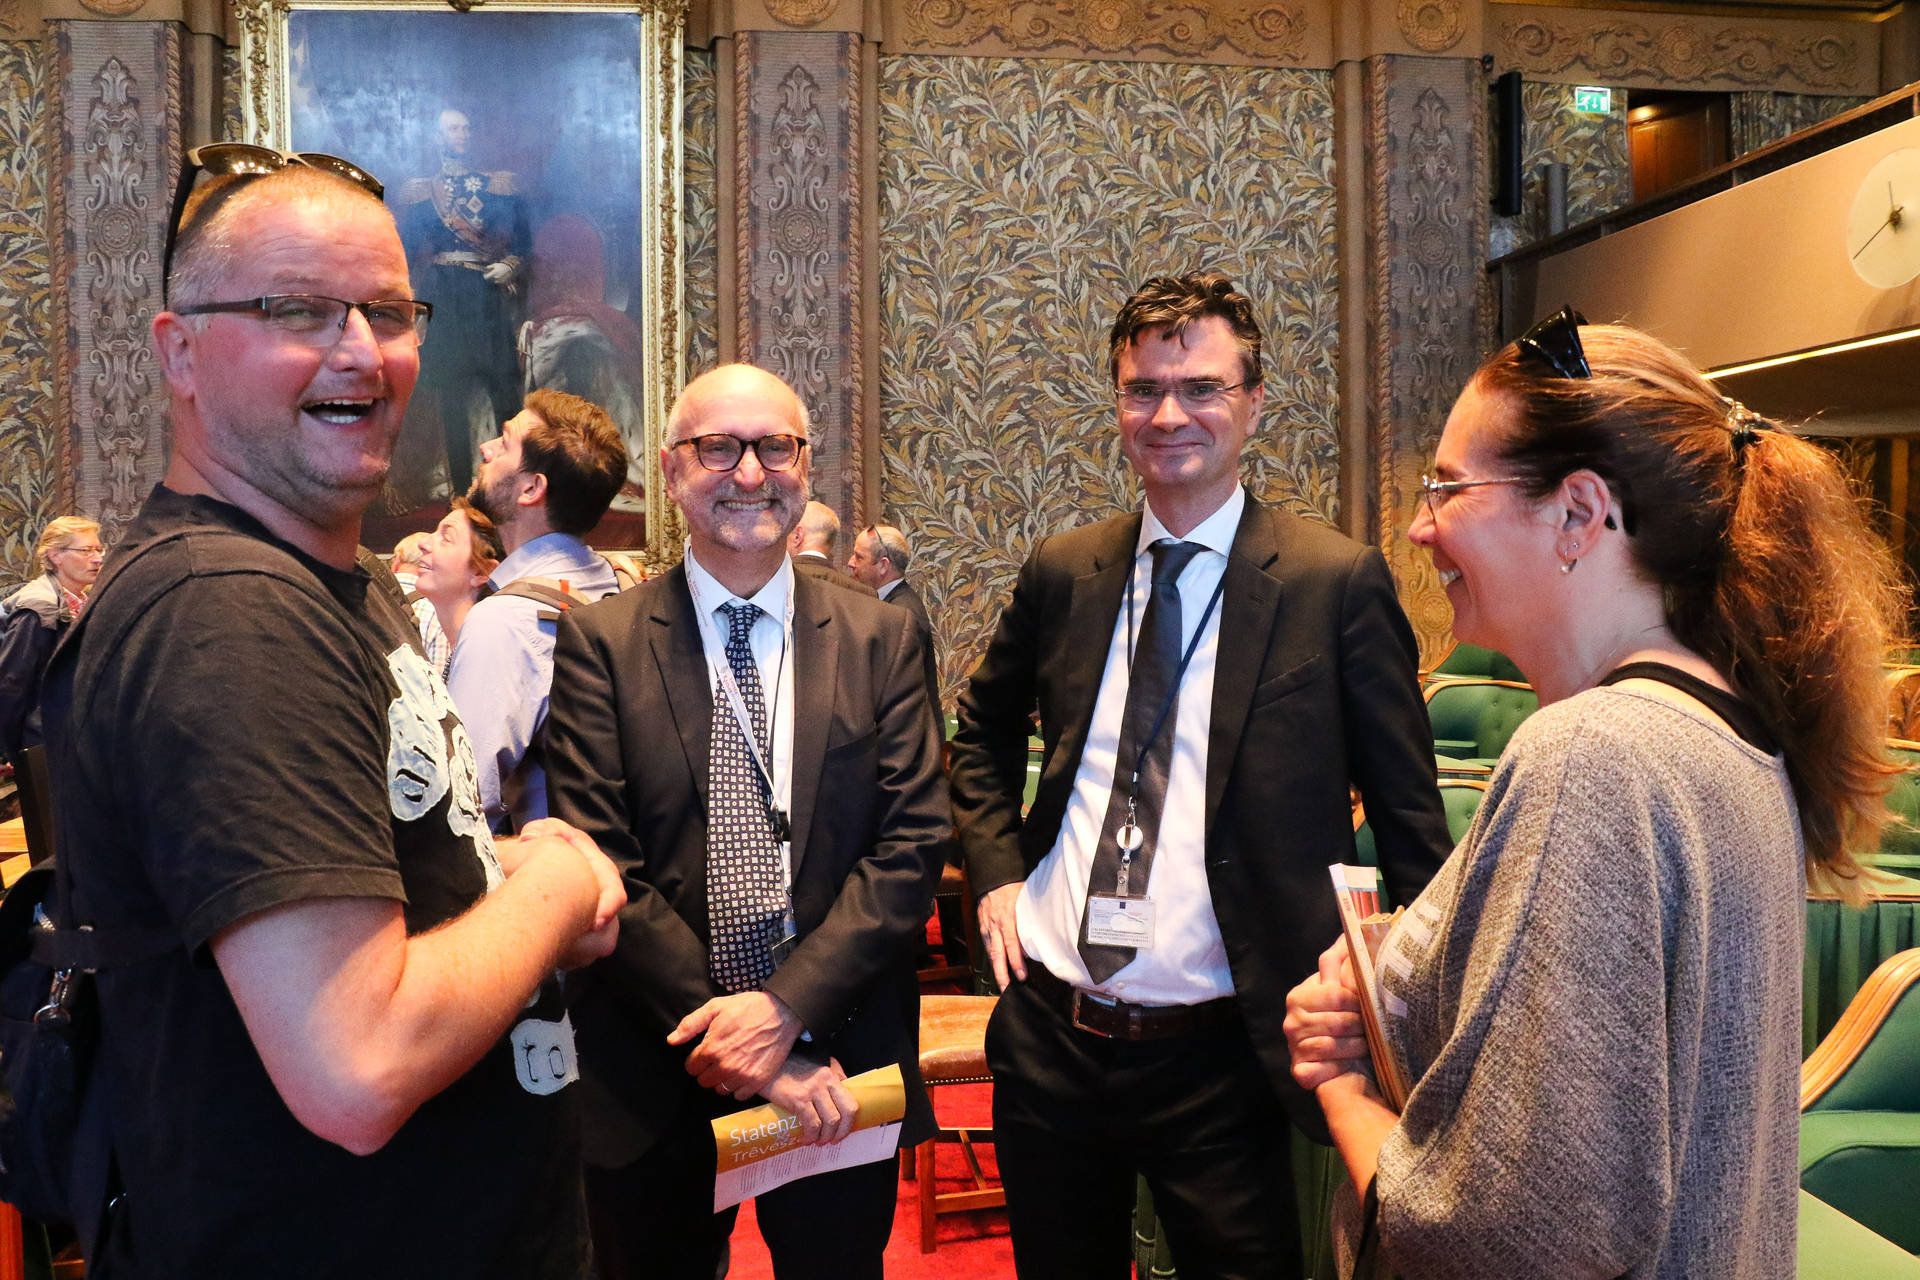 FVD-senatoren Cliteur en Van Wely (midden) in gesprek met bezoekers